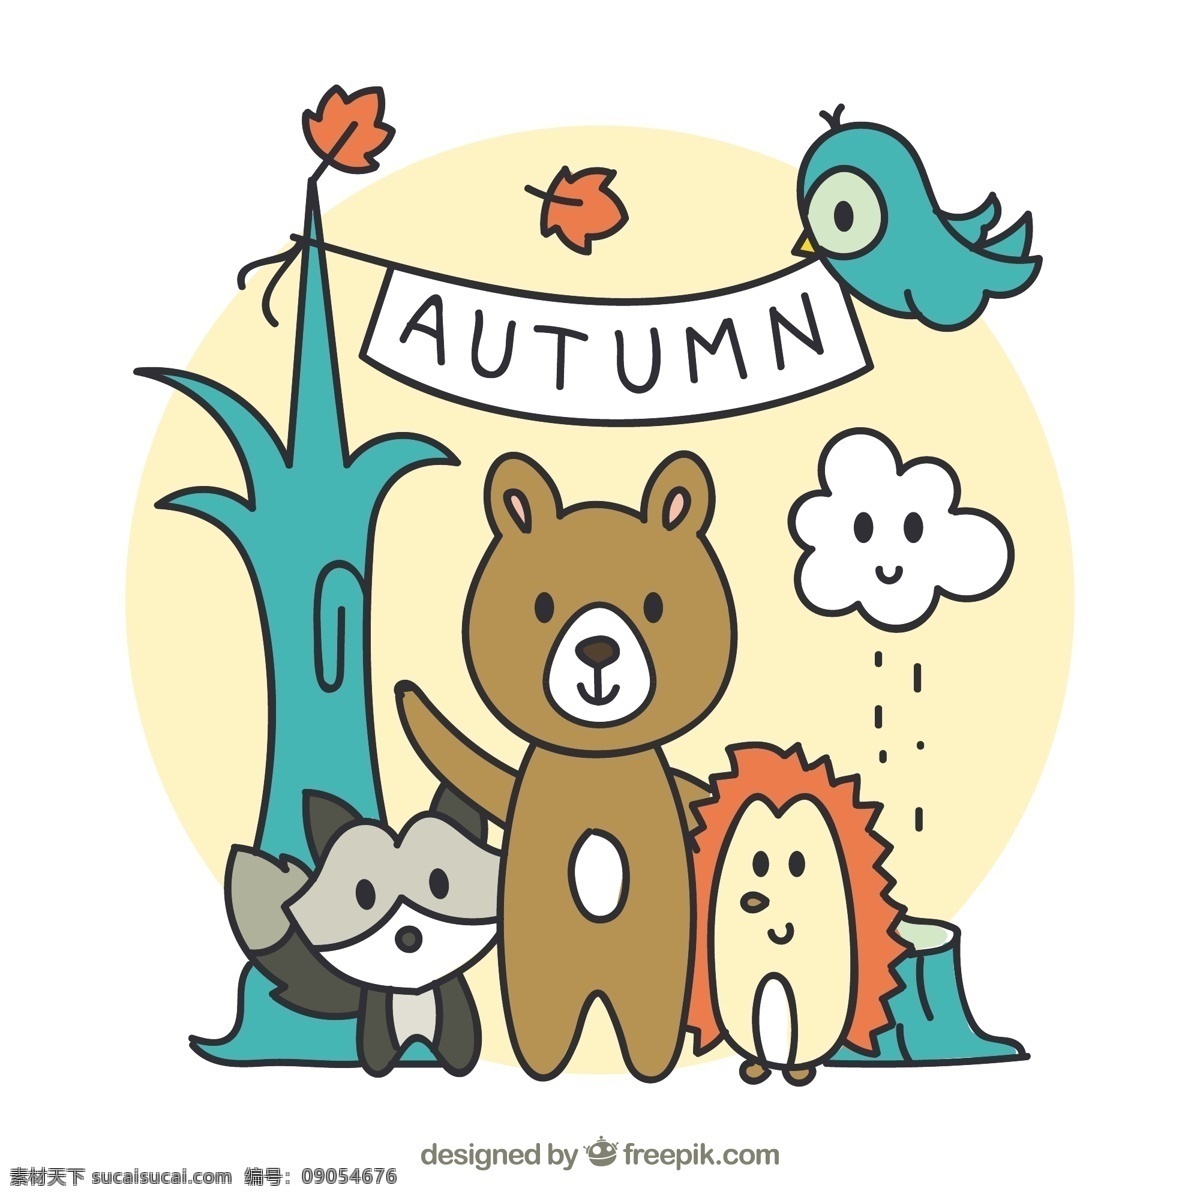 秋天 背景 手绘 森林 朋友 手 叶 自然 性格 树叶 动物 熊 绘画 色彩 自然背景 温暖 树枝 秋叶